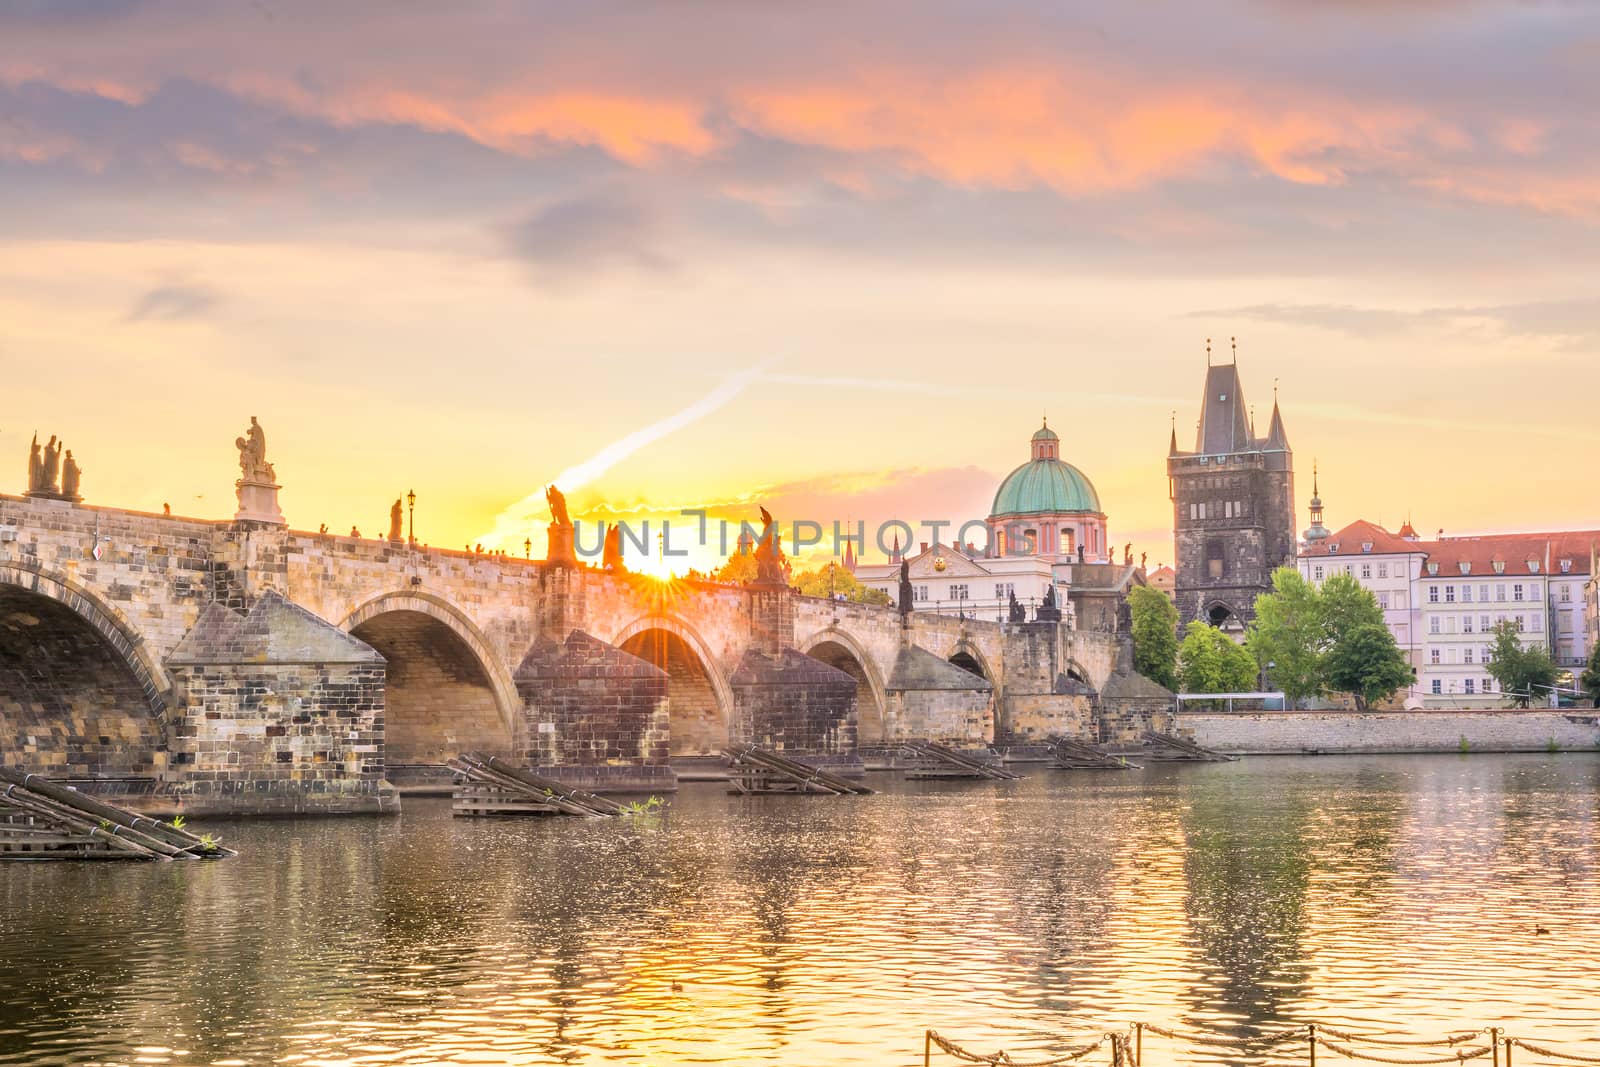 Famous iconic image of Charles bridge and Praguecity skyline by f11photo